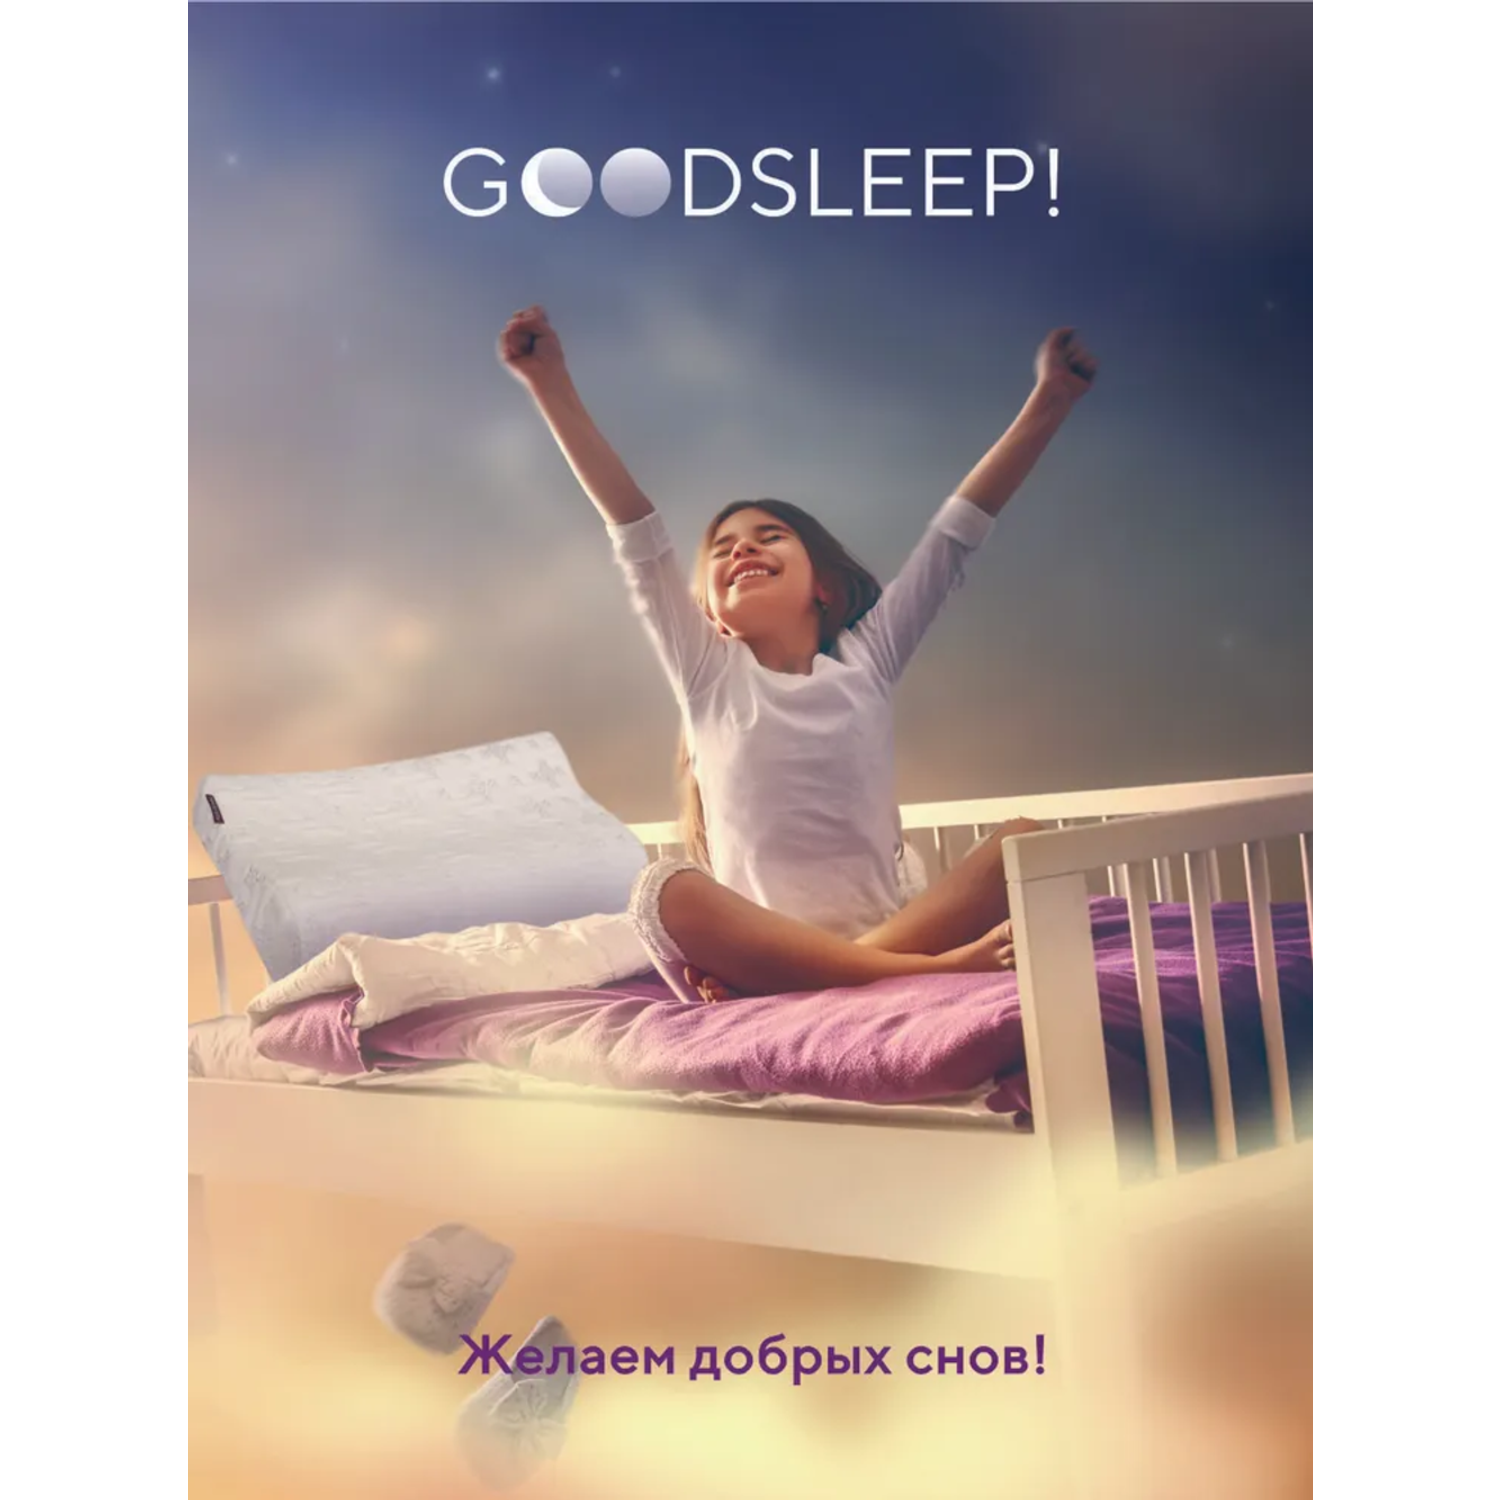 Ортопедическая подушка Goodsleep! для детей от 3-х лет - фото 4